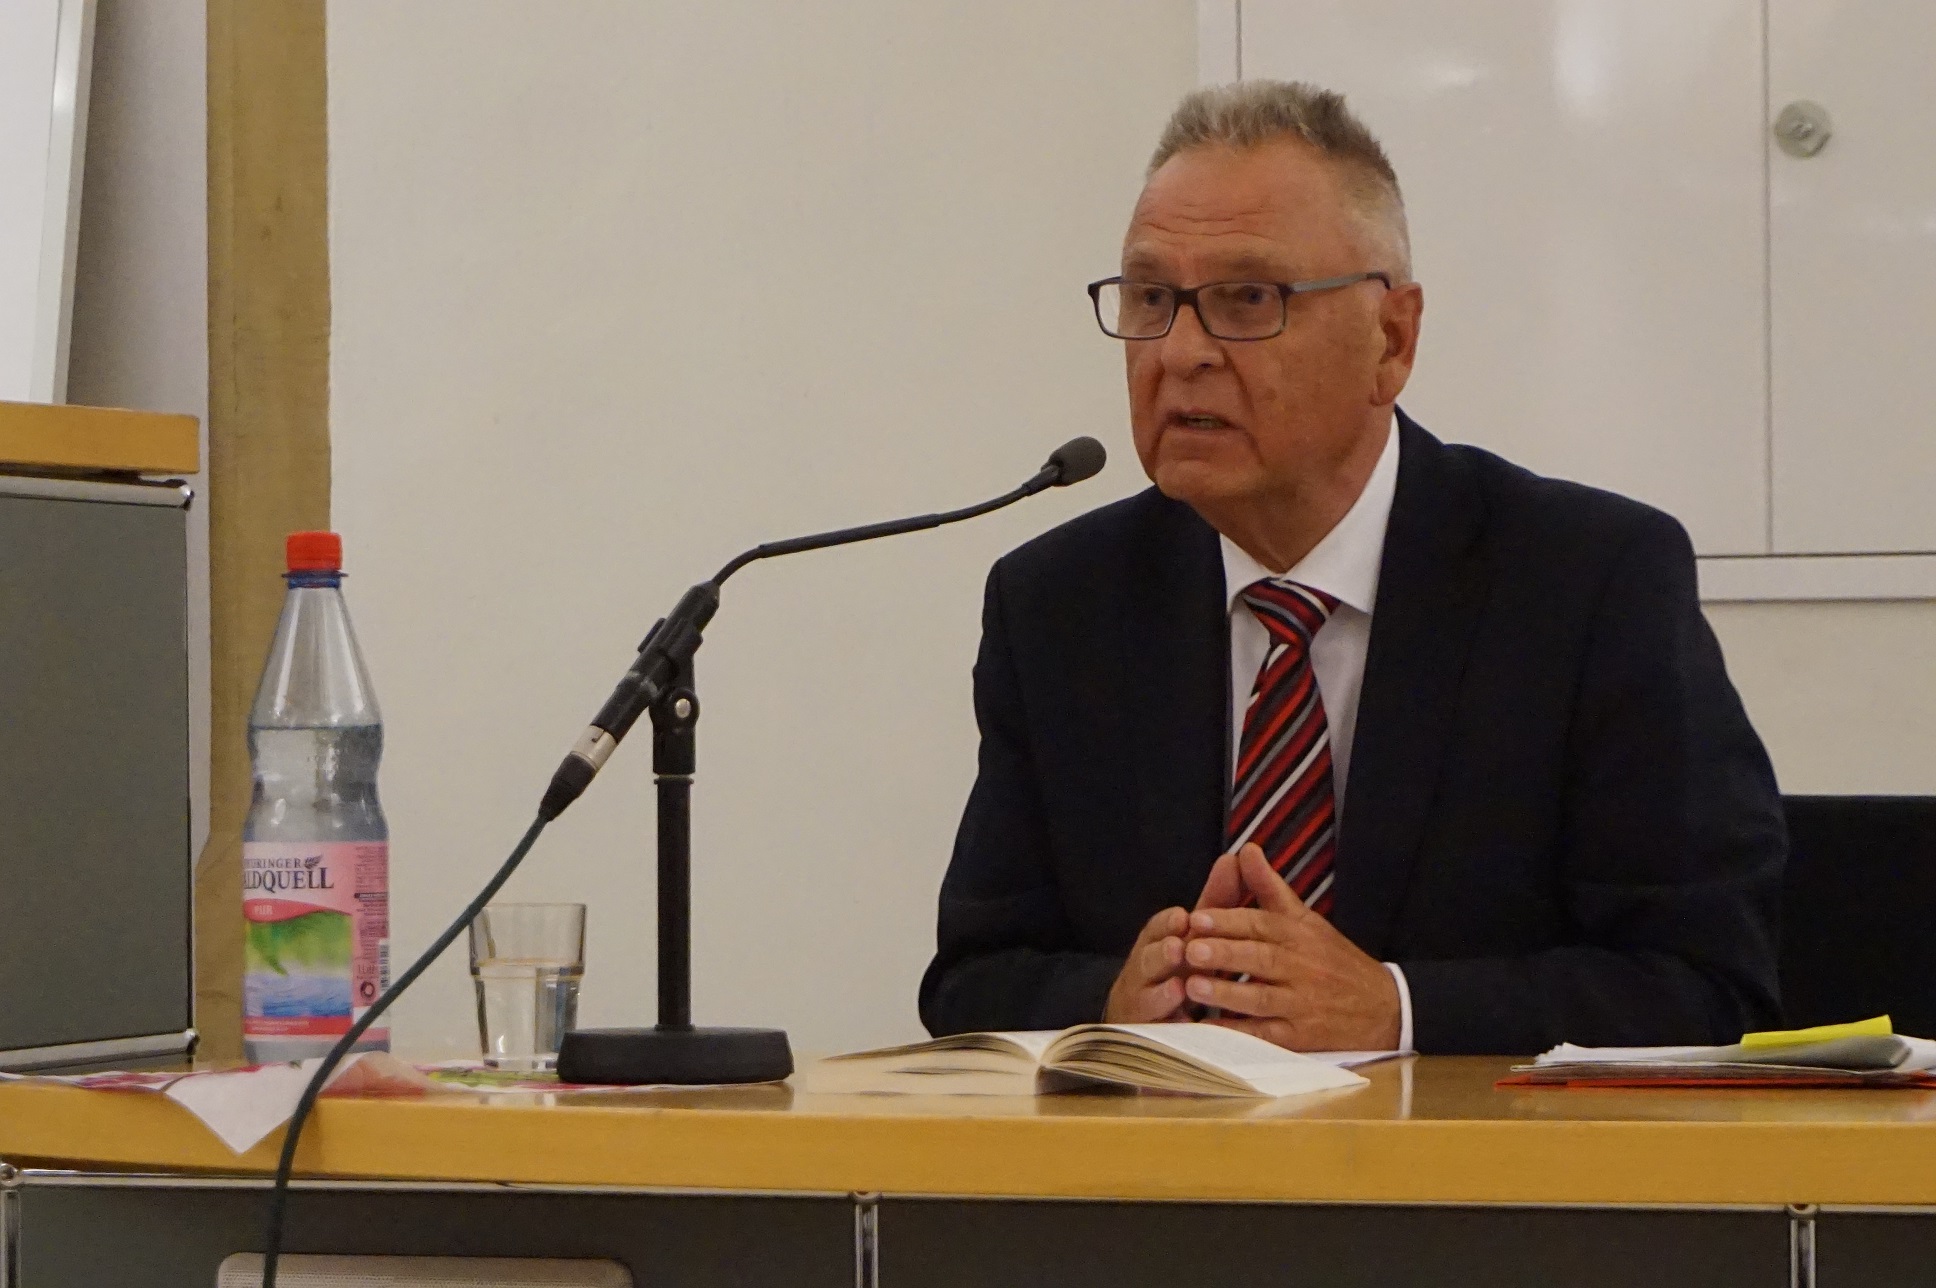 Hans-Jürgen Papier bei seinem Vortrag am Rednerpult im Rahmen der Kreuzgang-Gespräche